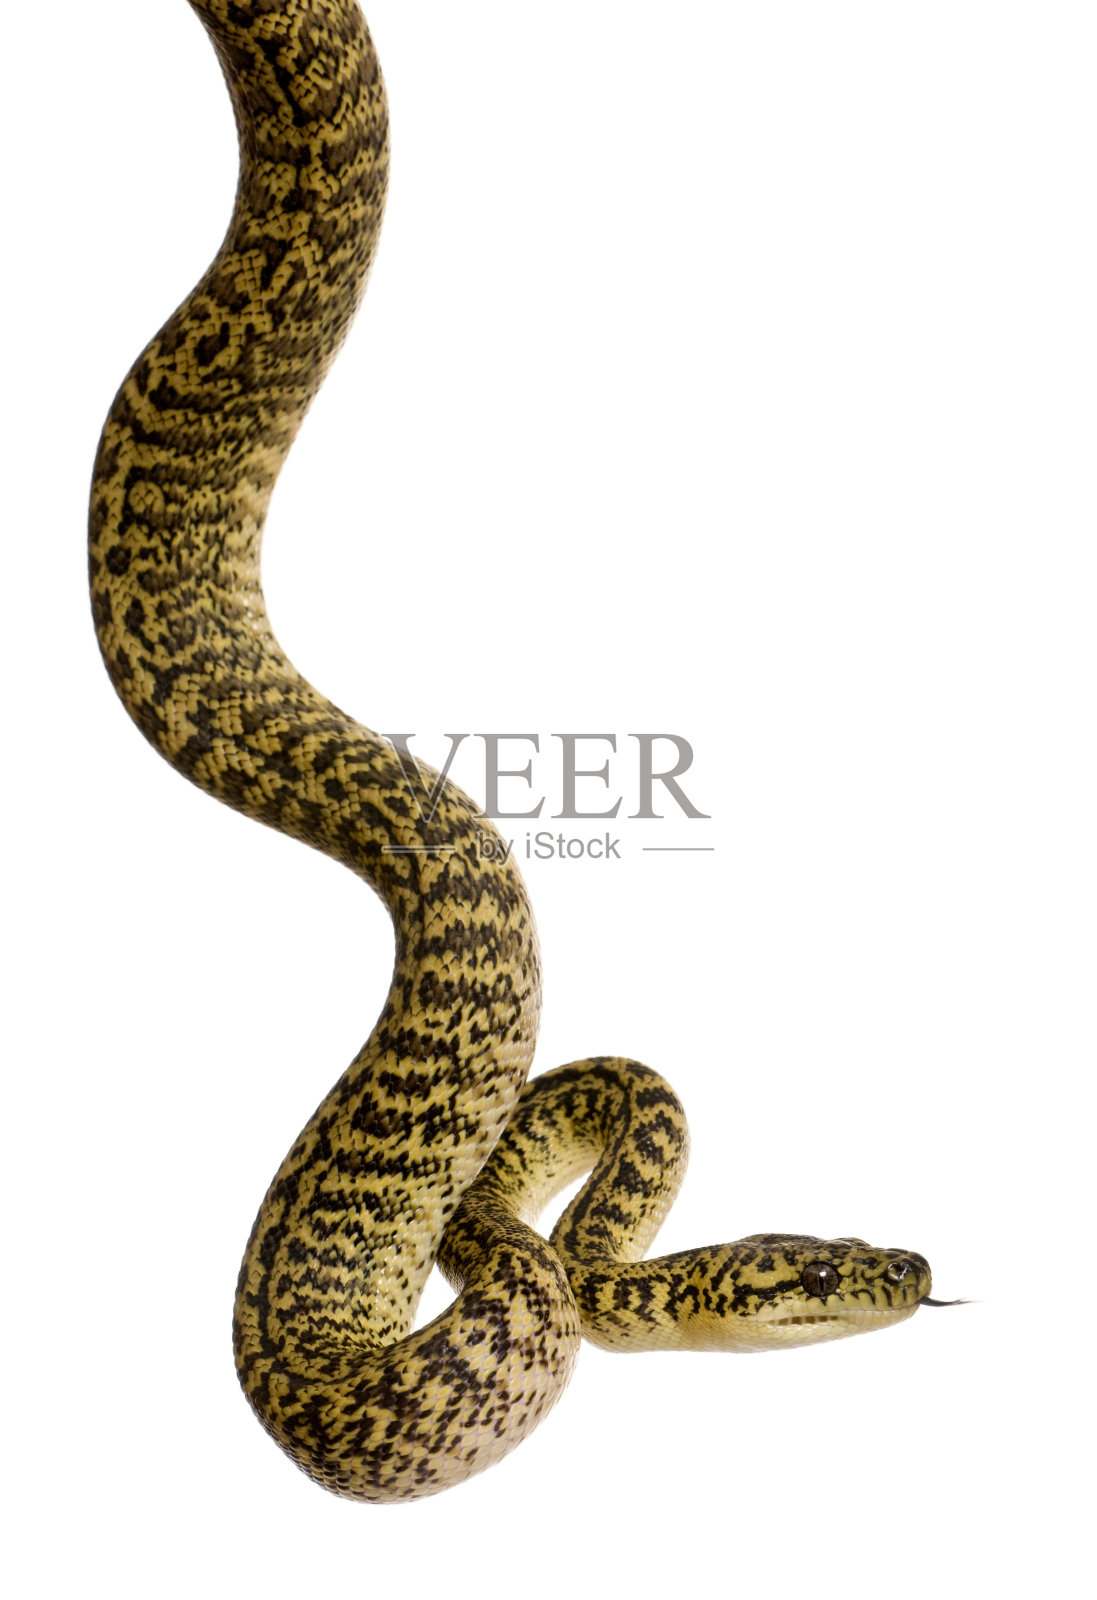 白背蛇，蟒蛇亚种照片摄影图片